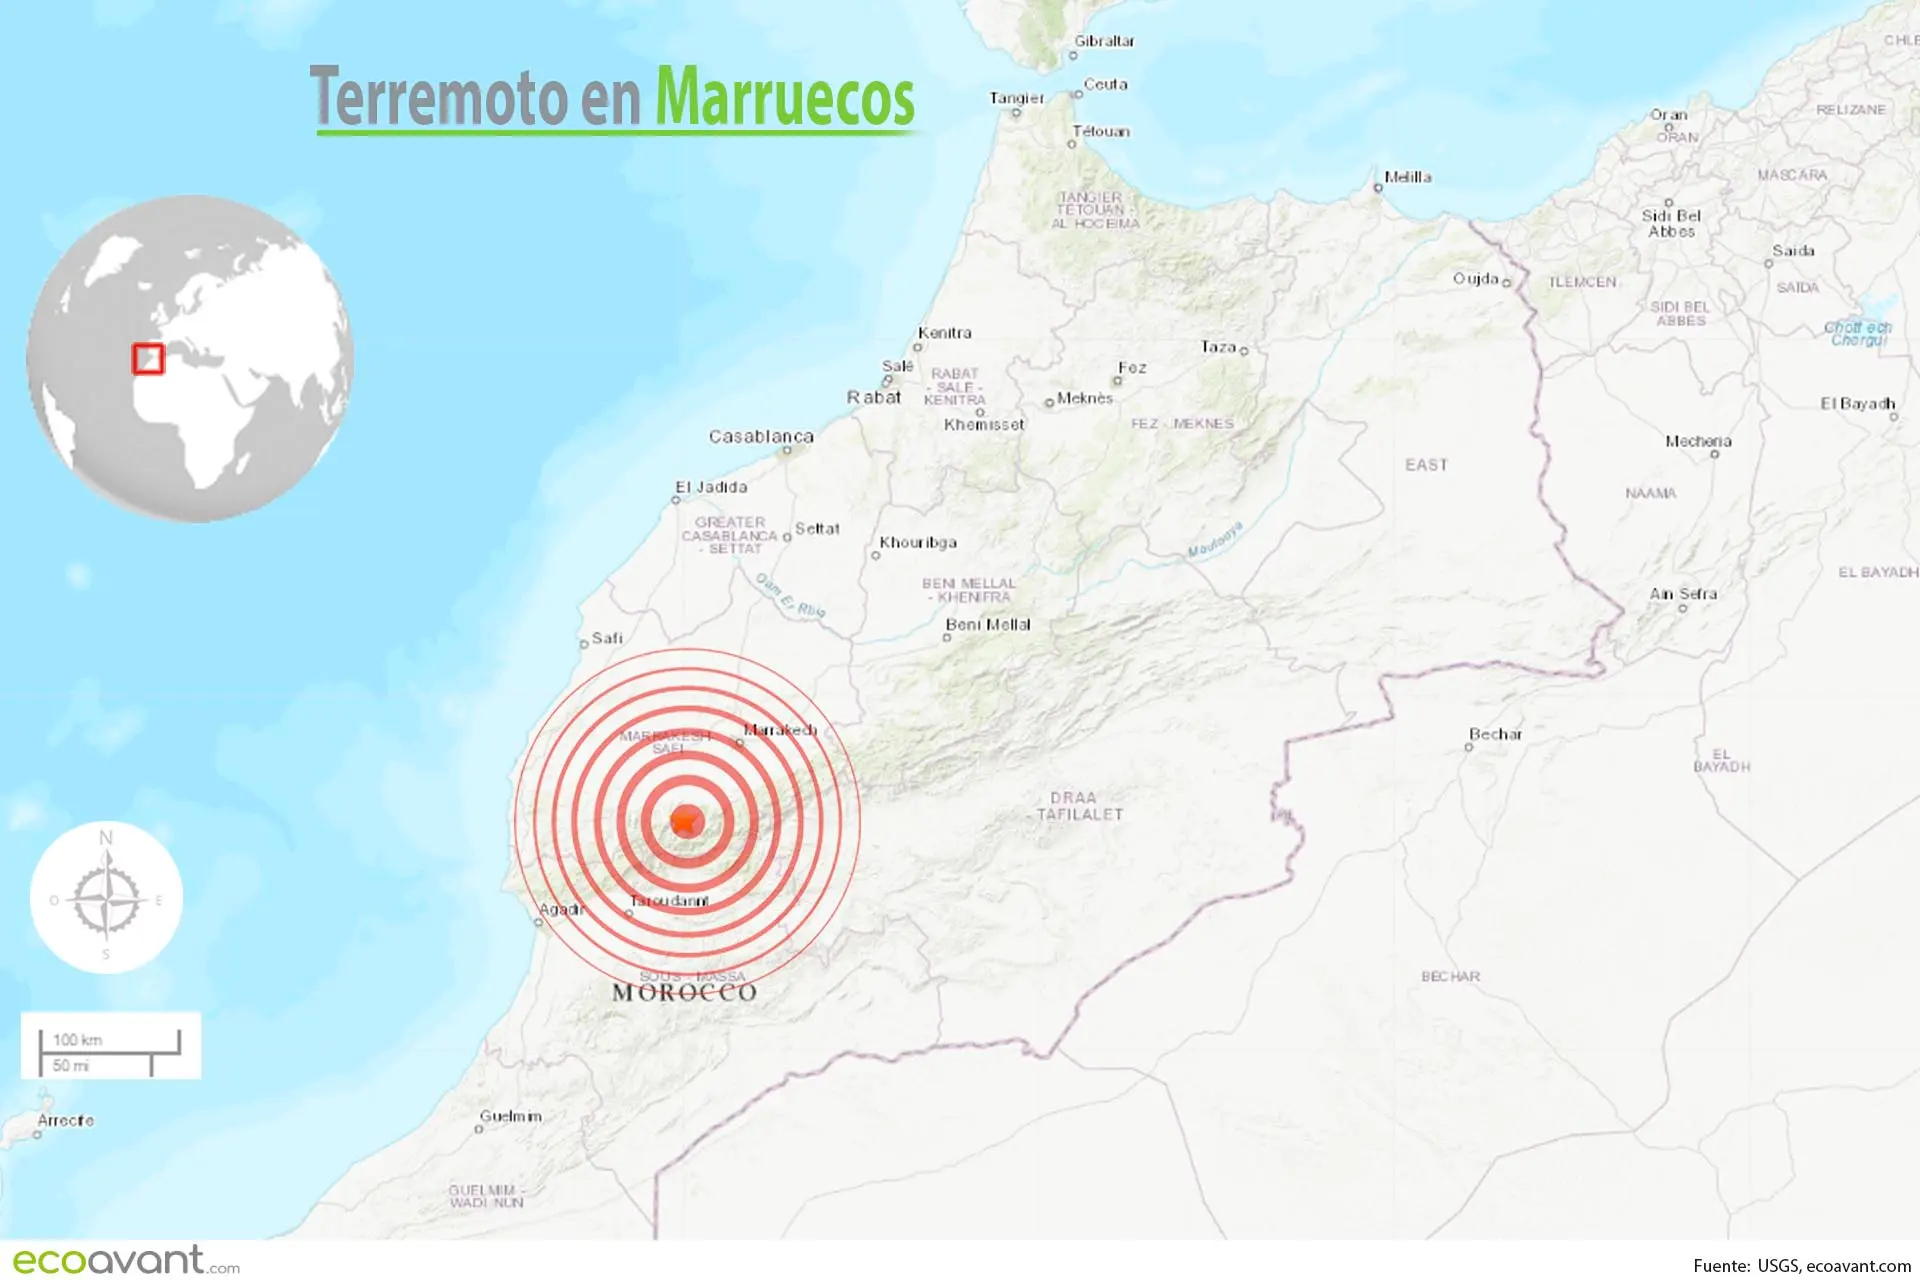 Mapa terremoto en Marruecos | 2.681 muertos y 2.501 heridos